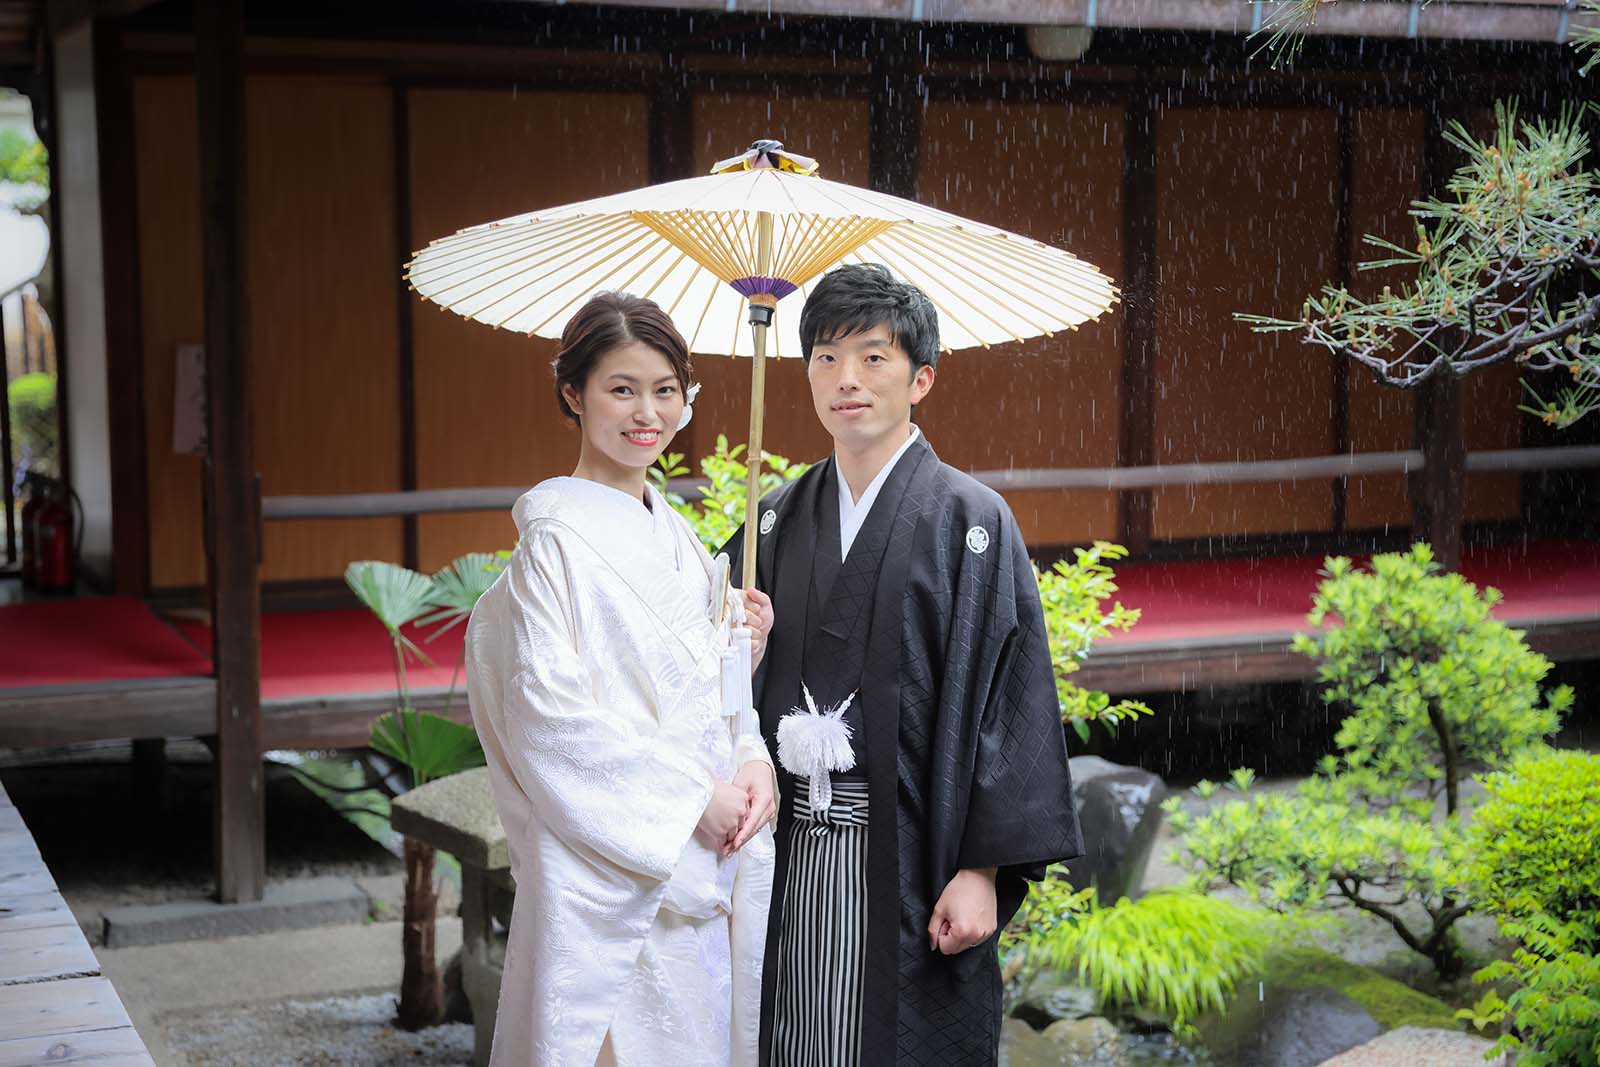 雨のお寺のお庭での和装前撮りのカップル様